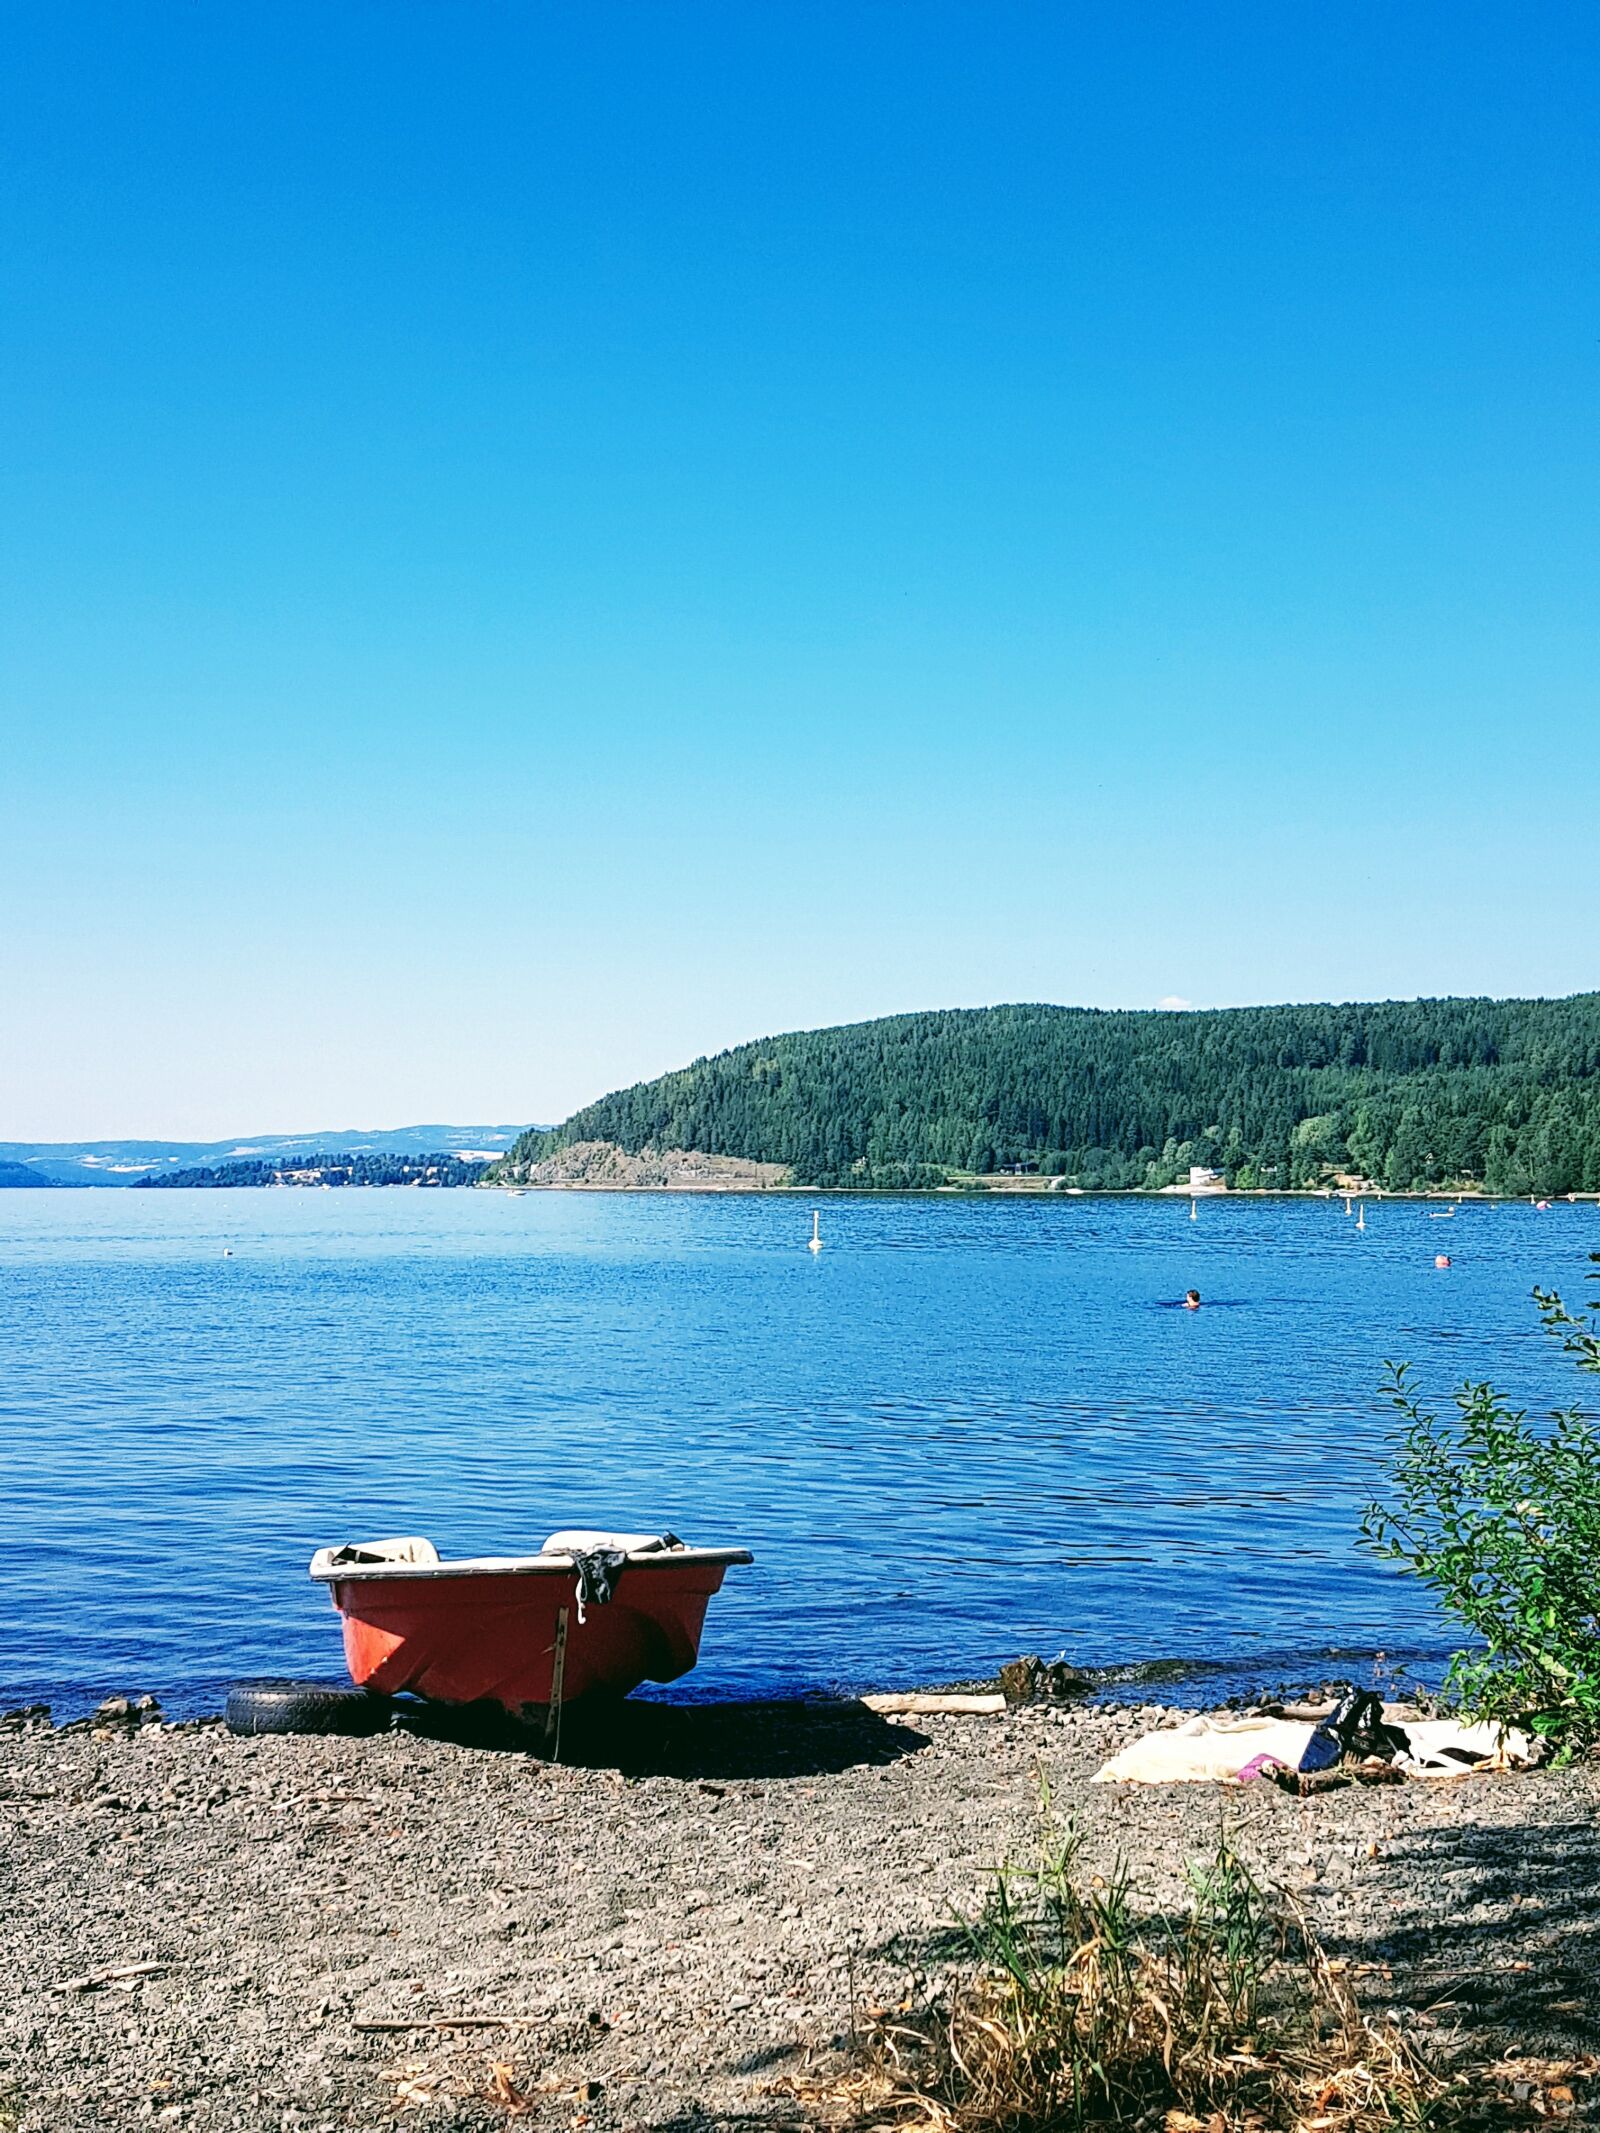 Samsung Galaxy S7 sample photo. Boat, lake, sunshine photography